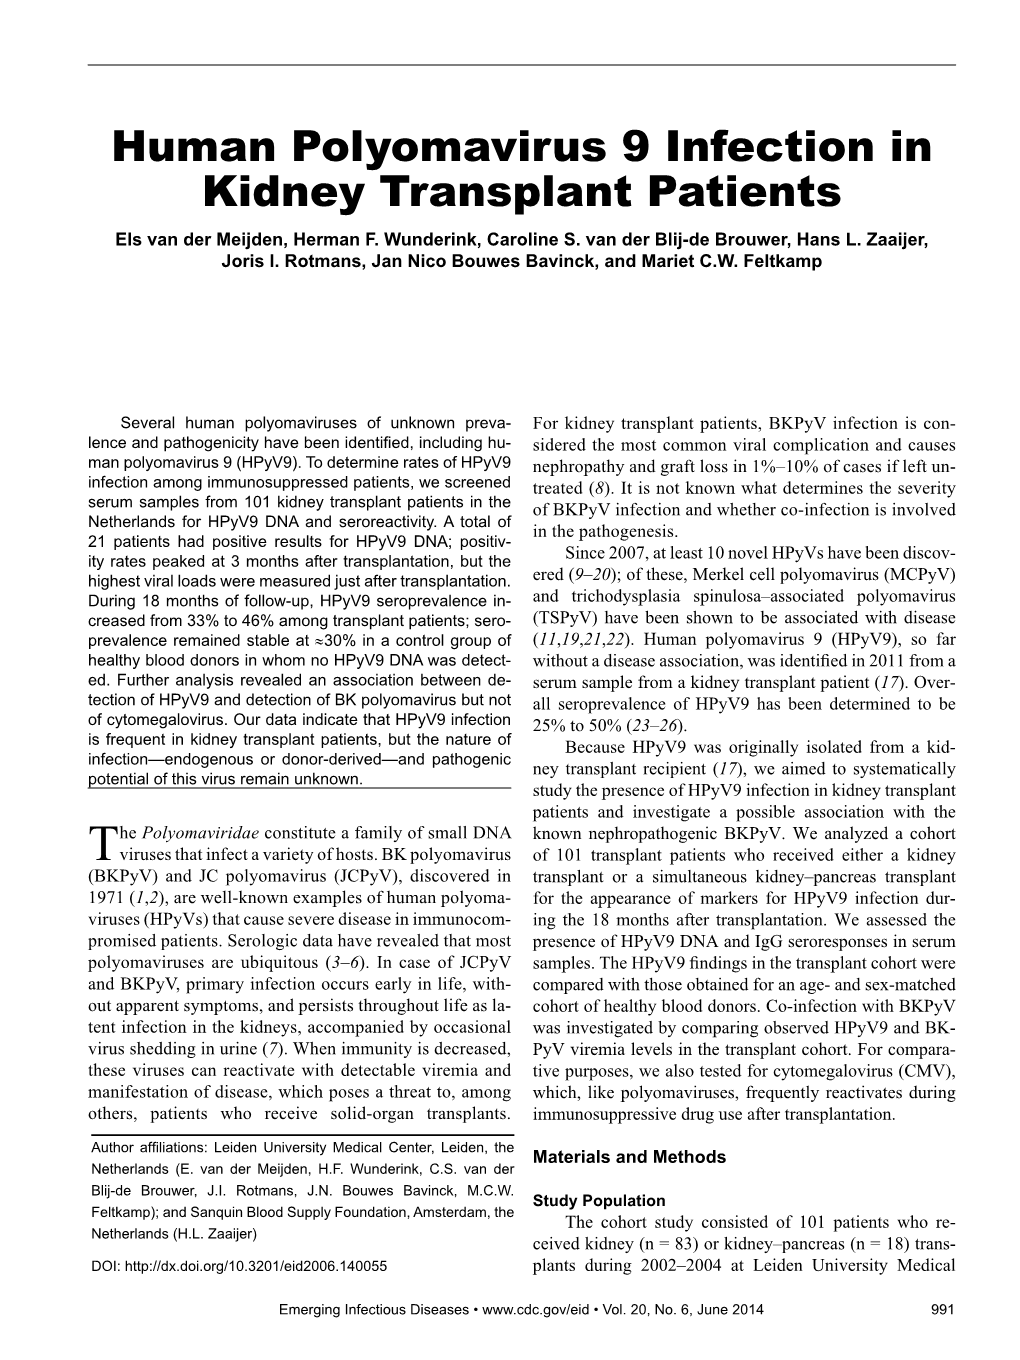 Human Polyomavirus 9 Infection in Kidney Transplant Patients Els Van Der Meijden, Herman F